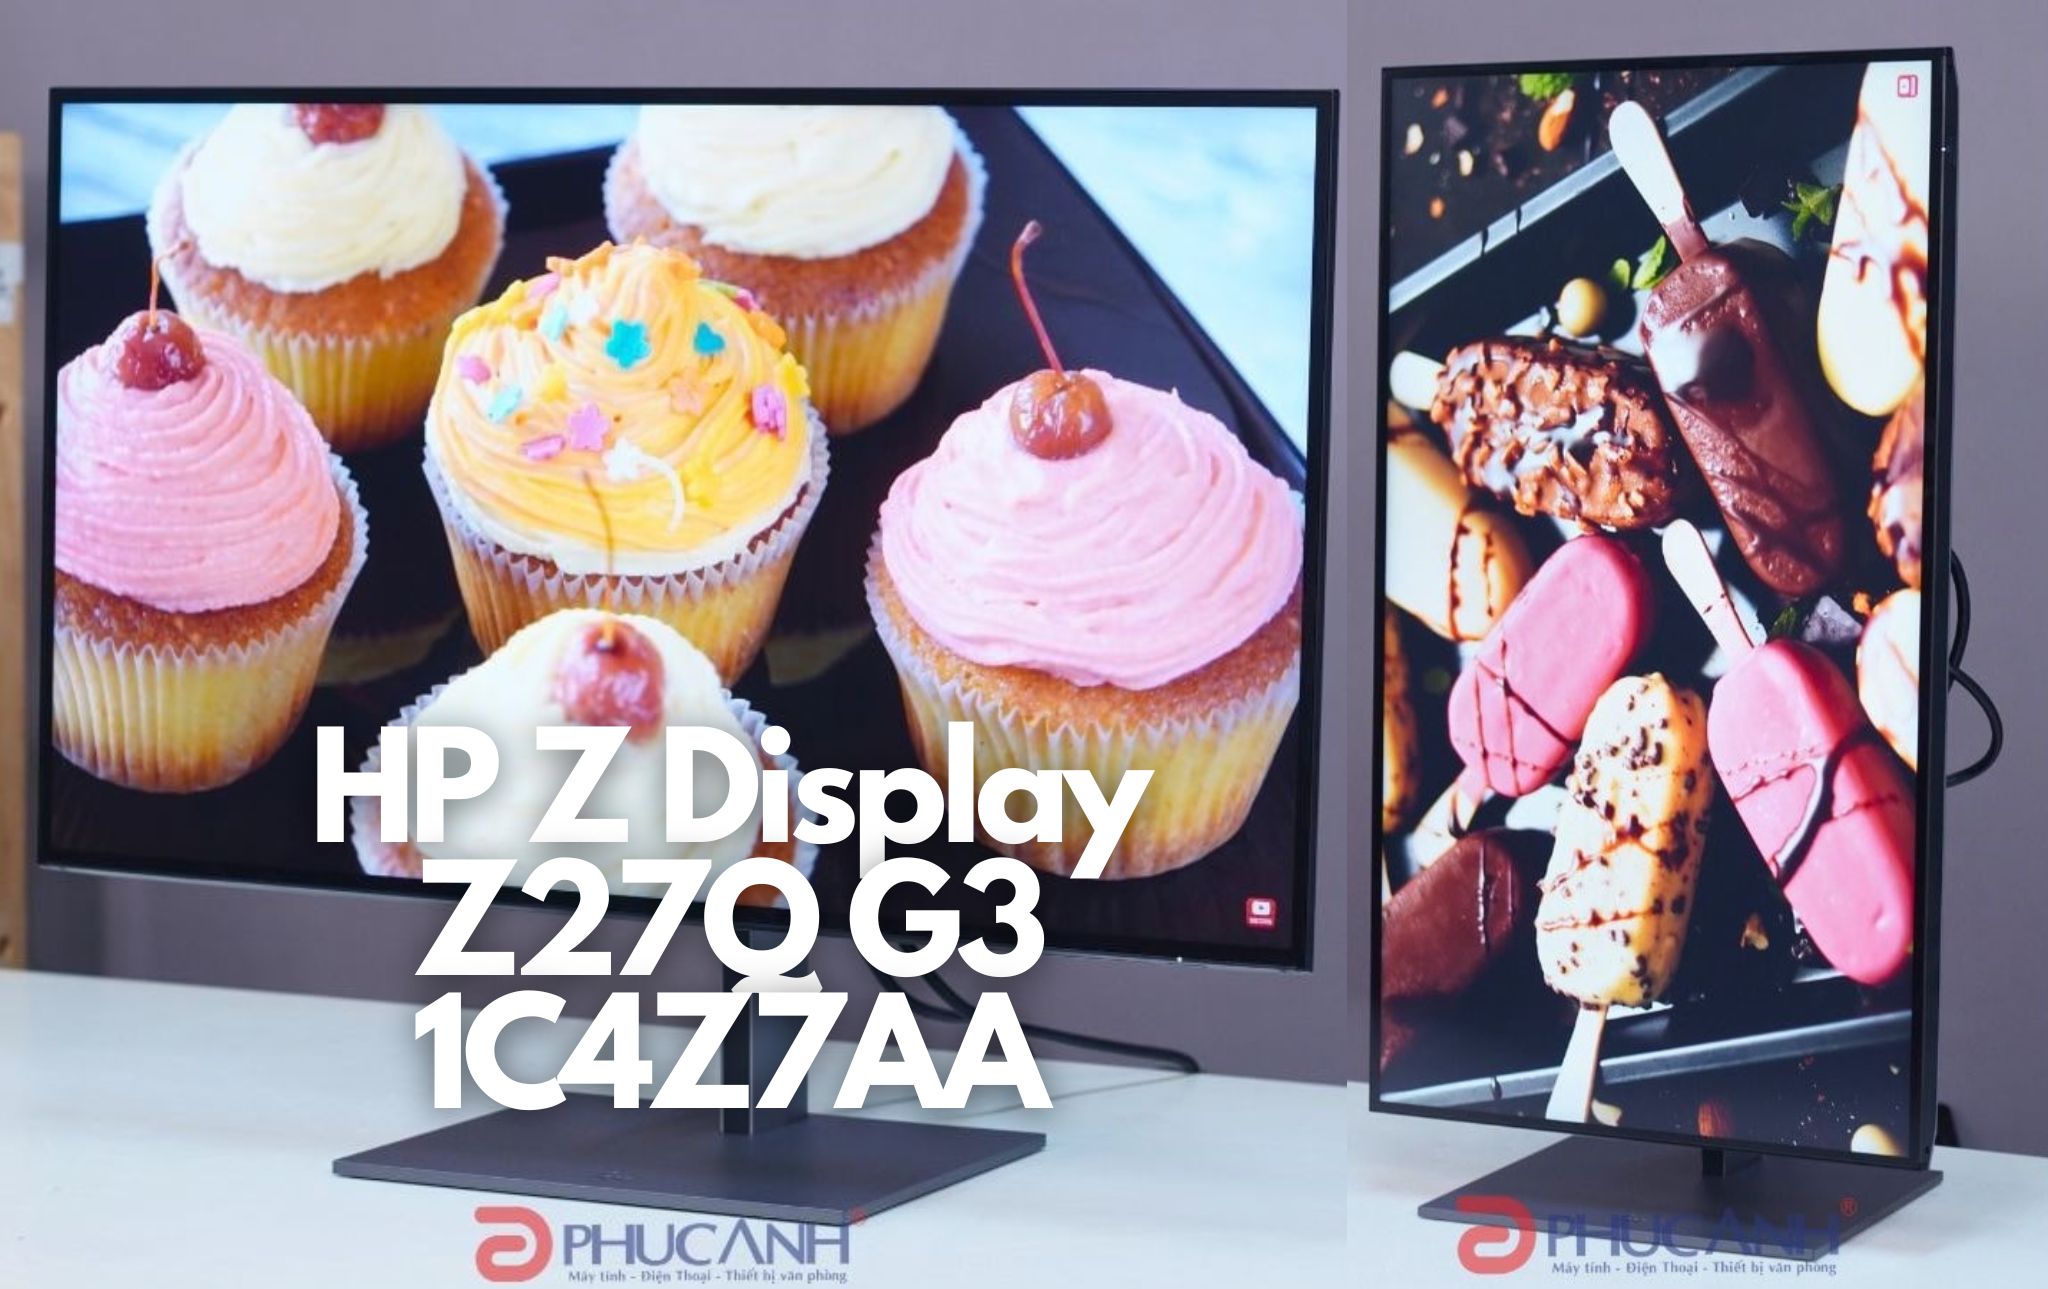 [Review] Màn hình HP Z Z27Q G3 1C4Z7AA - Đẳng cấp với thương hiệu HP Z cao cấp